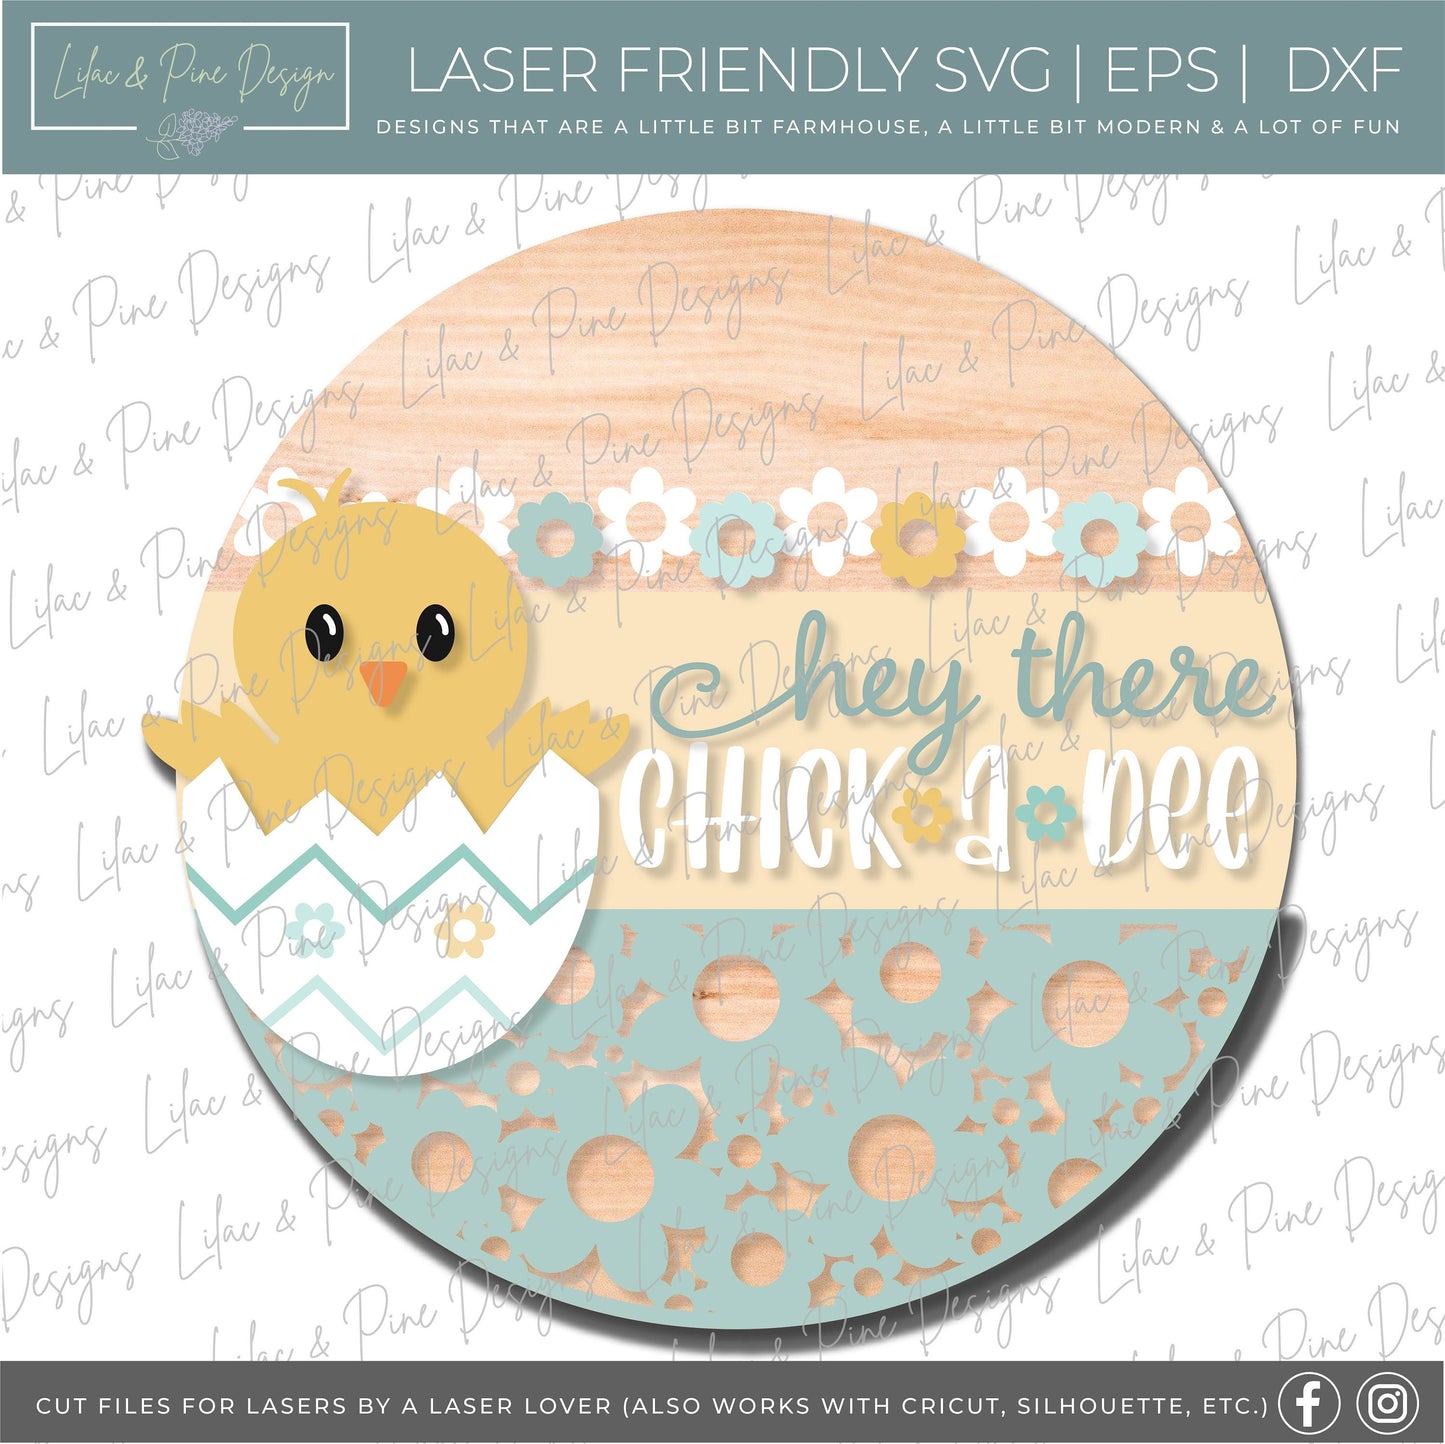 Baby chick Easter door hanger SVG, Spring Welcome sign, Easter egg svg, flower svg, Spring decor, Glowforge Svg, laser cut file